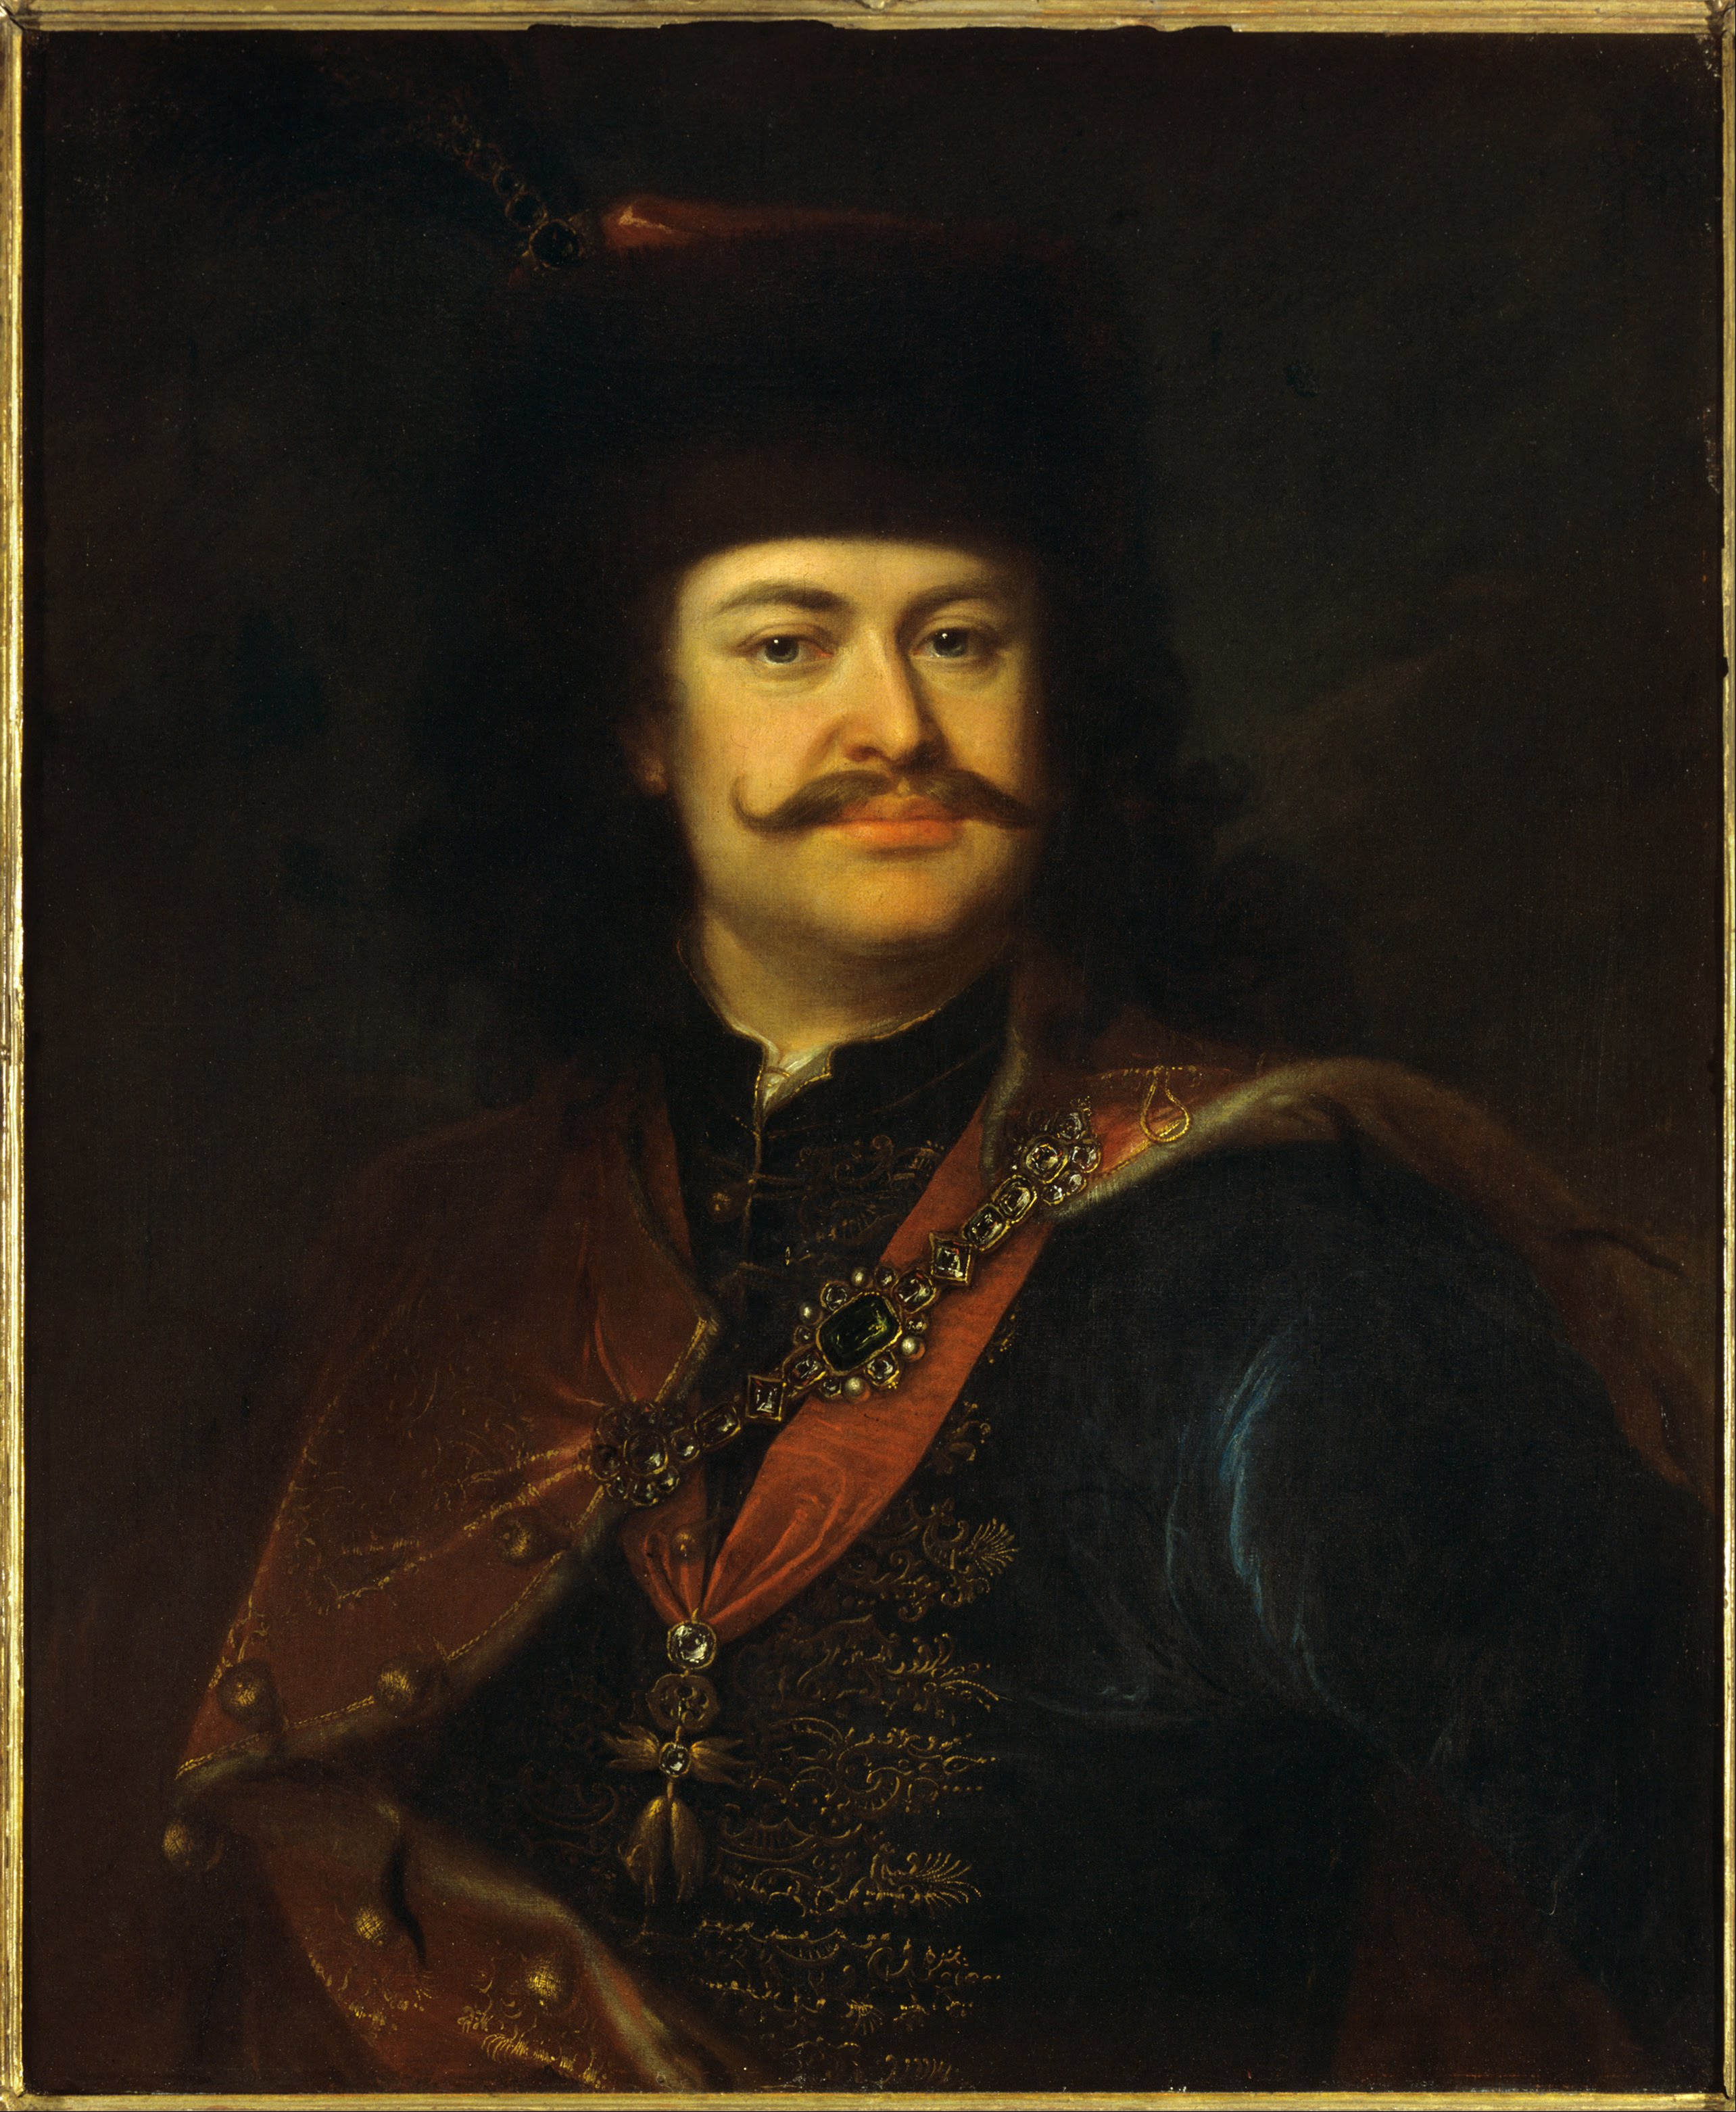 A nagyszombati csata egyik vezéralakja, II. Rákóczi Ferenc. Forrás: Wikipedia